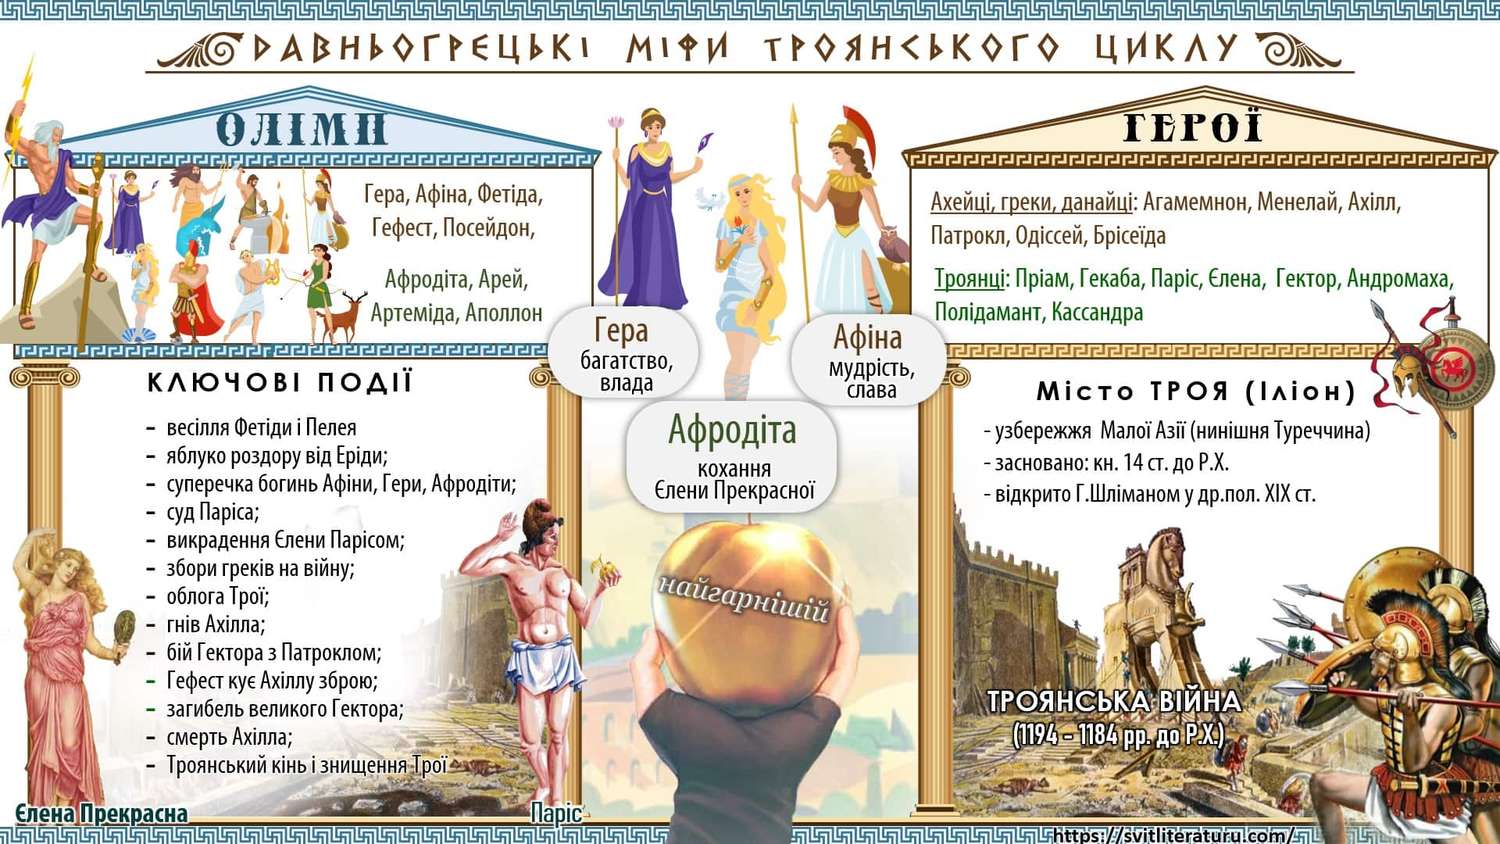 Давньогрецькі міфи Троянського циклу. Таблиця